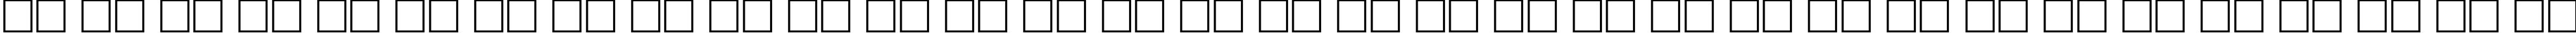 Пример написания русского алфавита шрифтом AGAvalanche